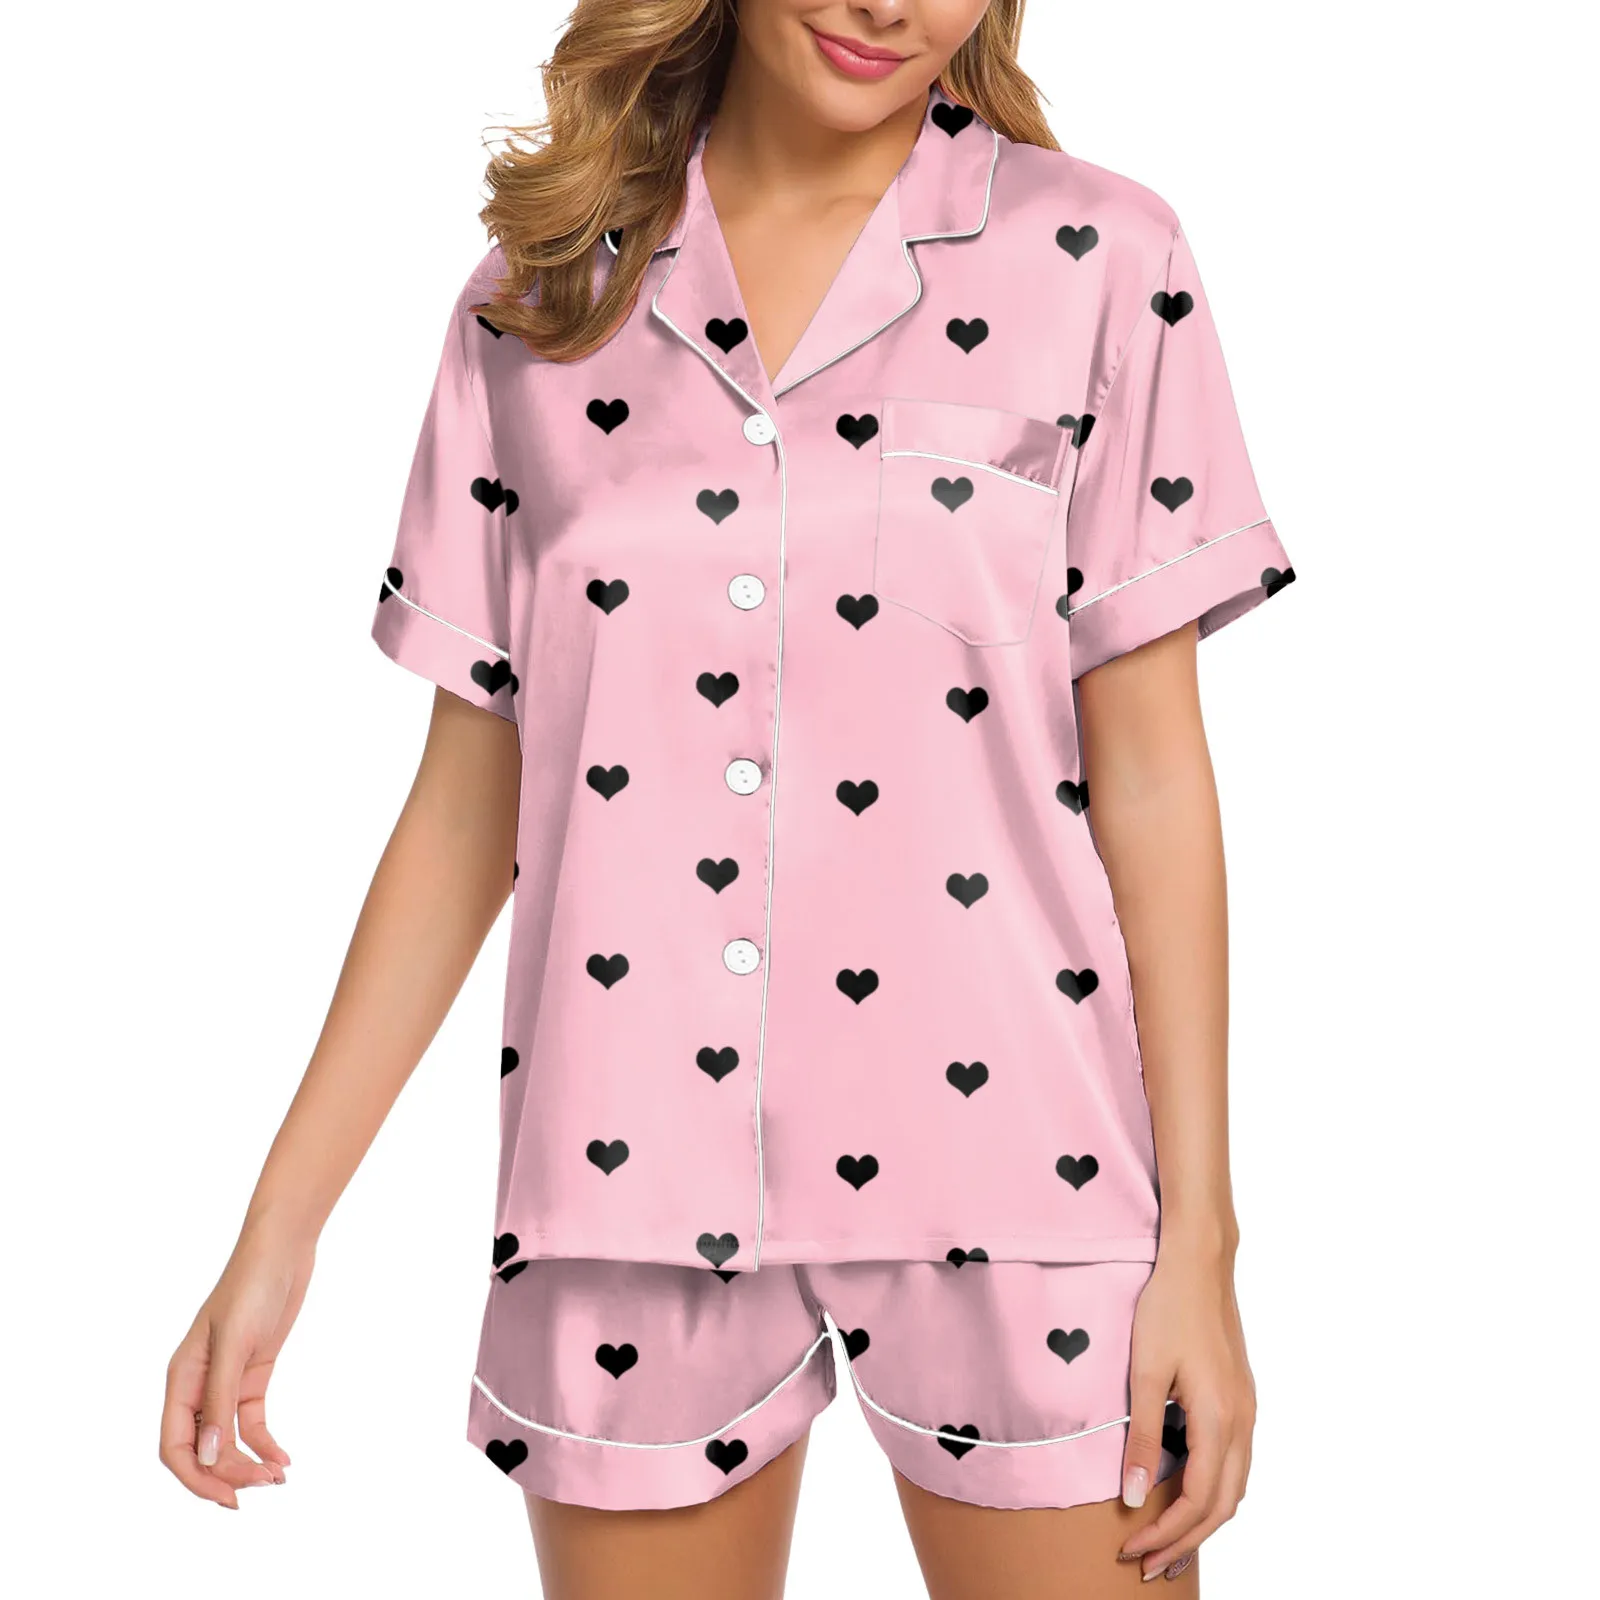 

Комплект пижамный женский из двух предметов, одежда для сна, домашняя одежда, Фланелевая пижама на пуговицах